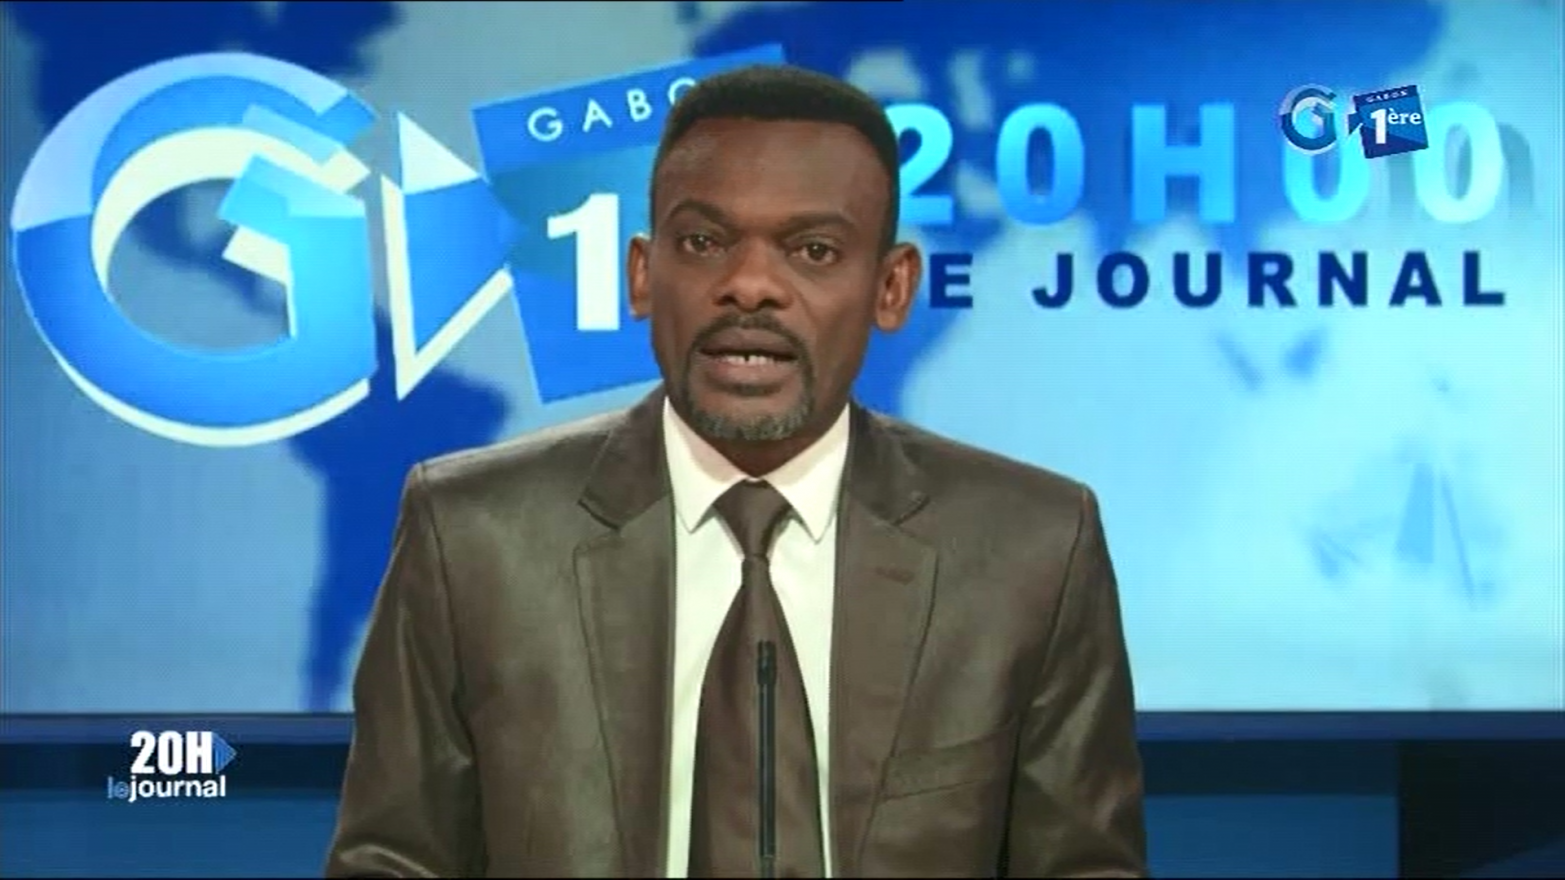 Journal télévisé de 20h de Gabon 1ère du 18 juillet 2019
